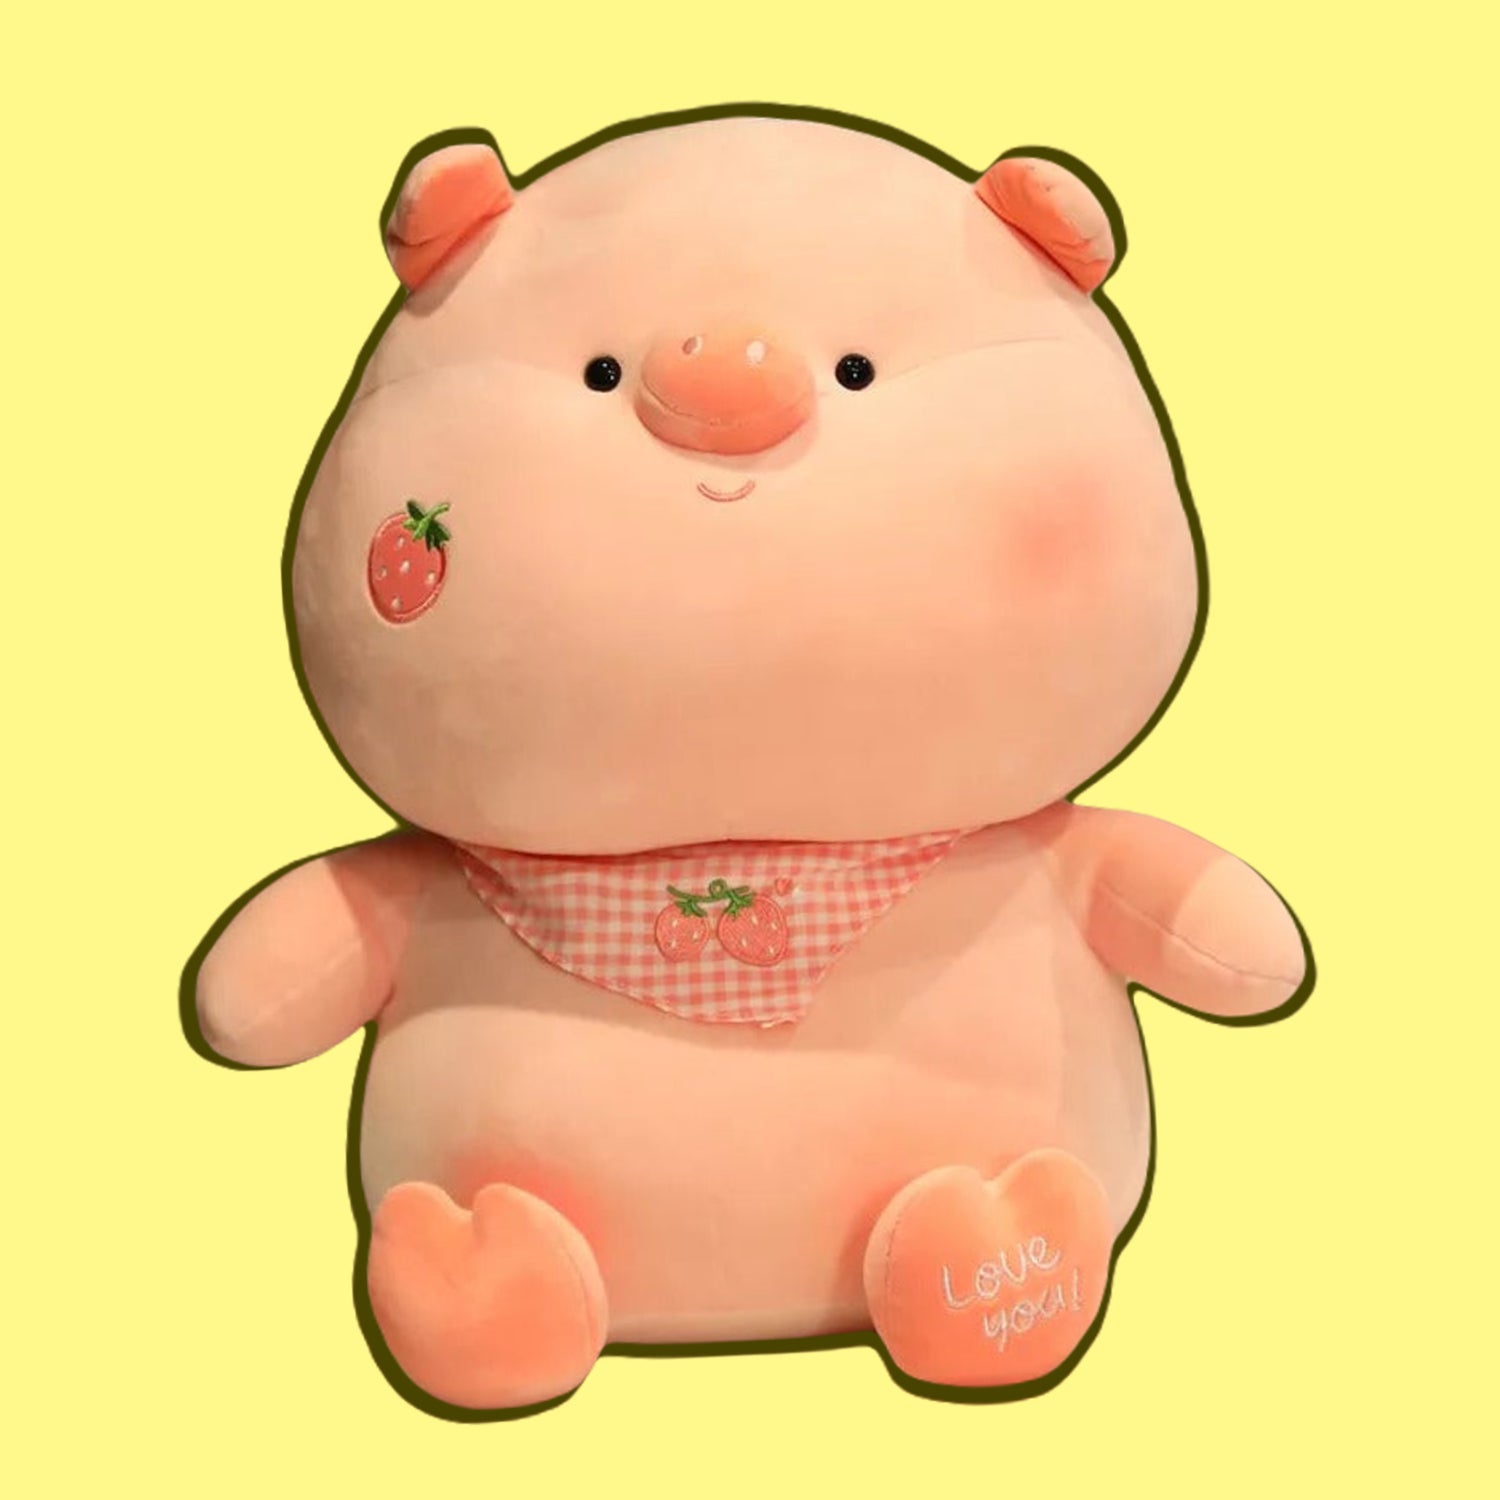 omgkawaii 🐰 Land Animals Plushies PRE-ORDER Kawaii Strawberry Plush Toy